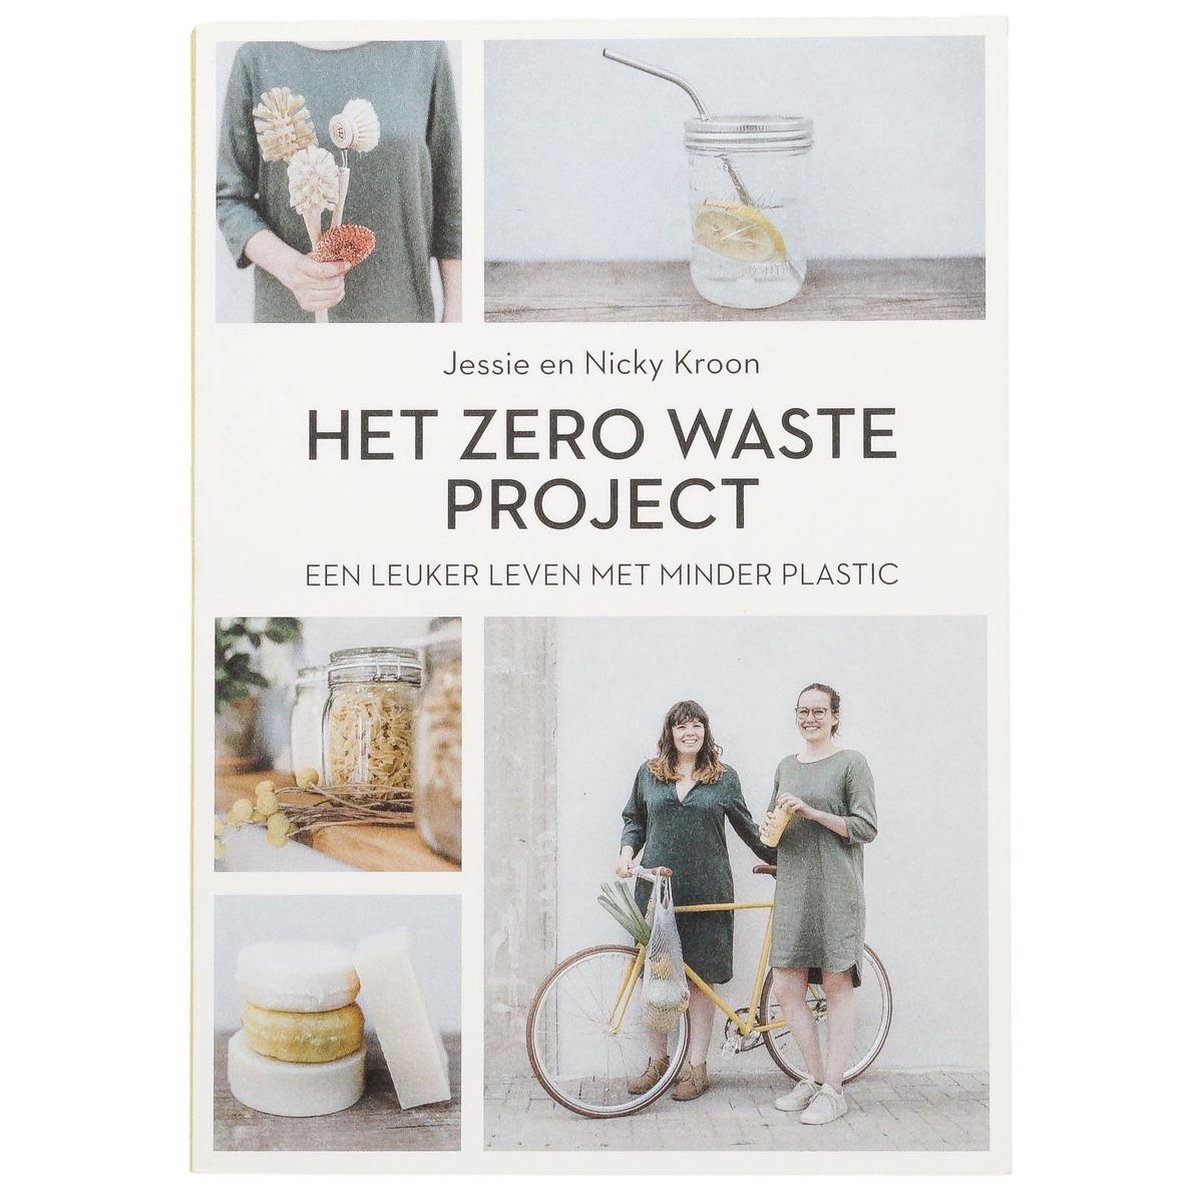 Het Zero waste project